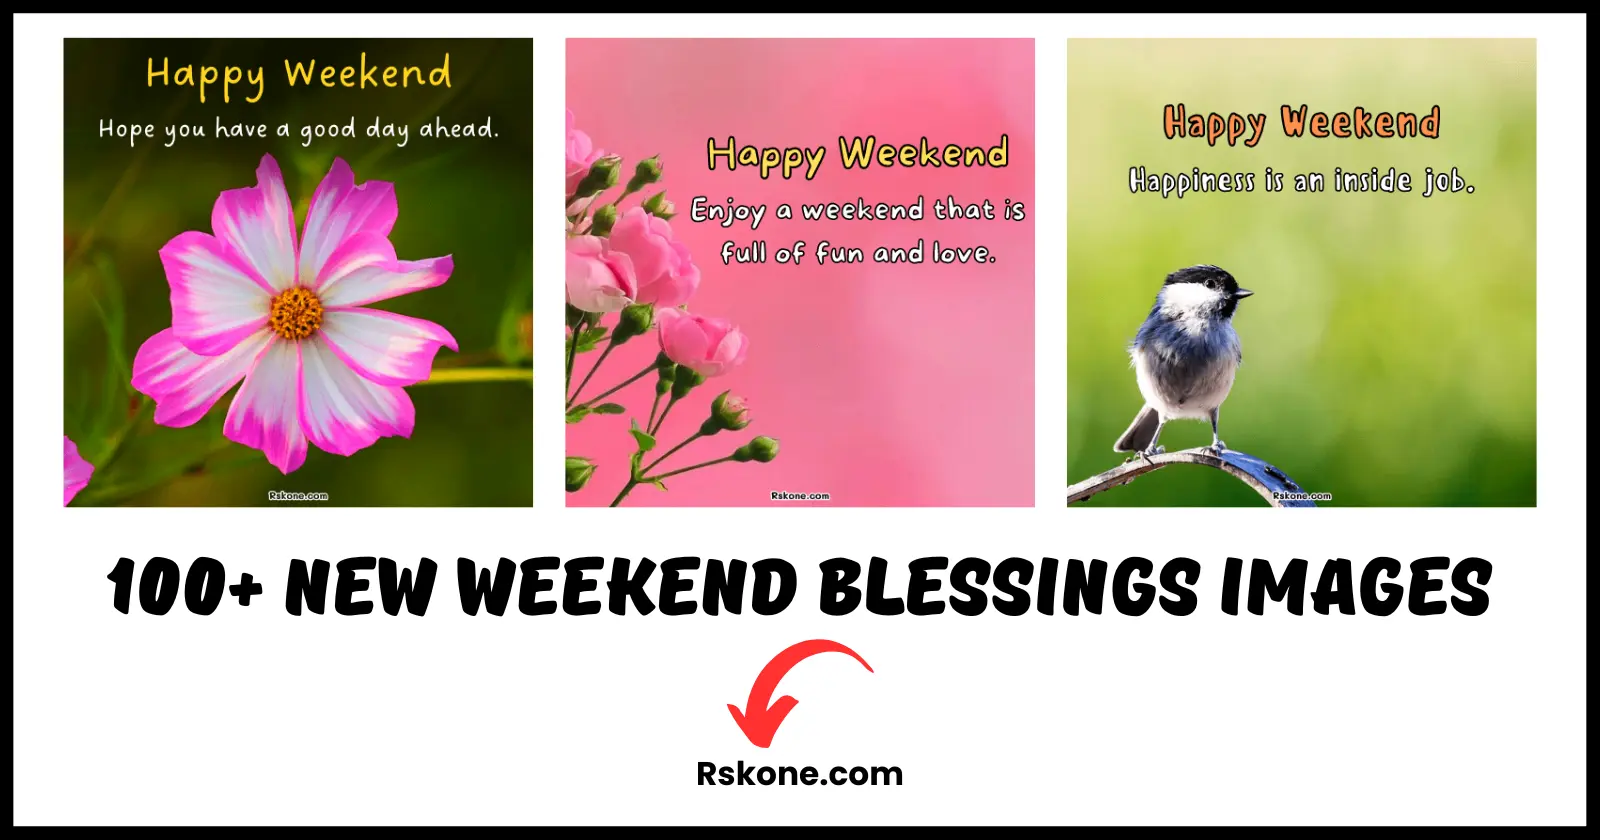 weekend blessings images rskone